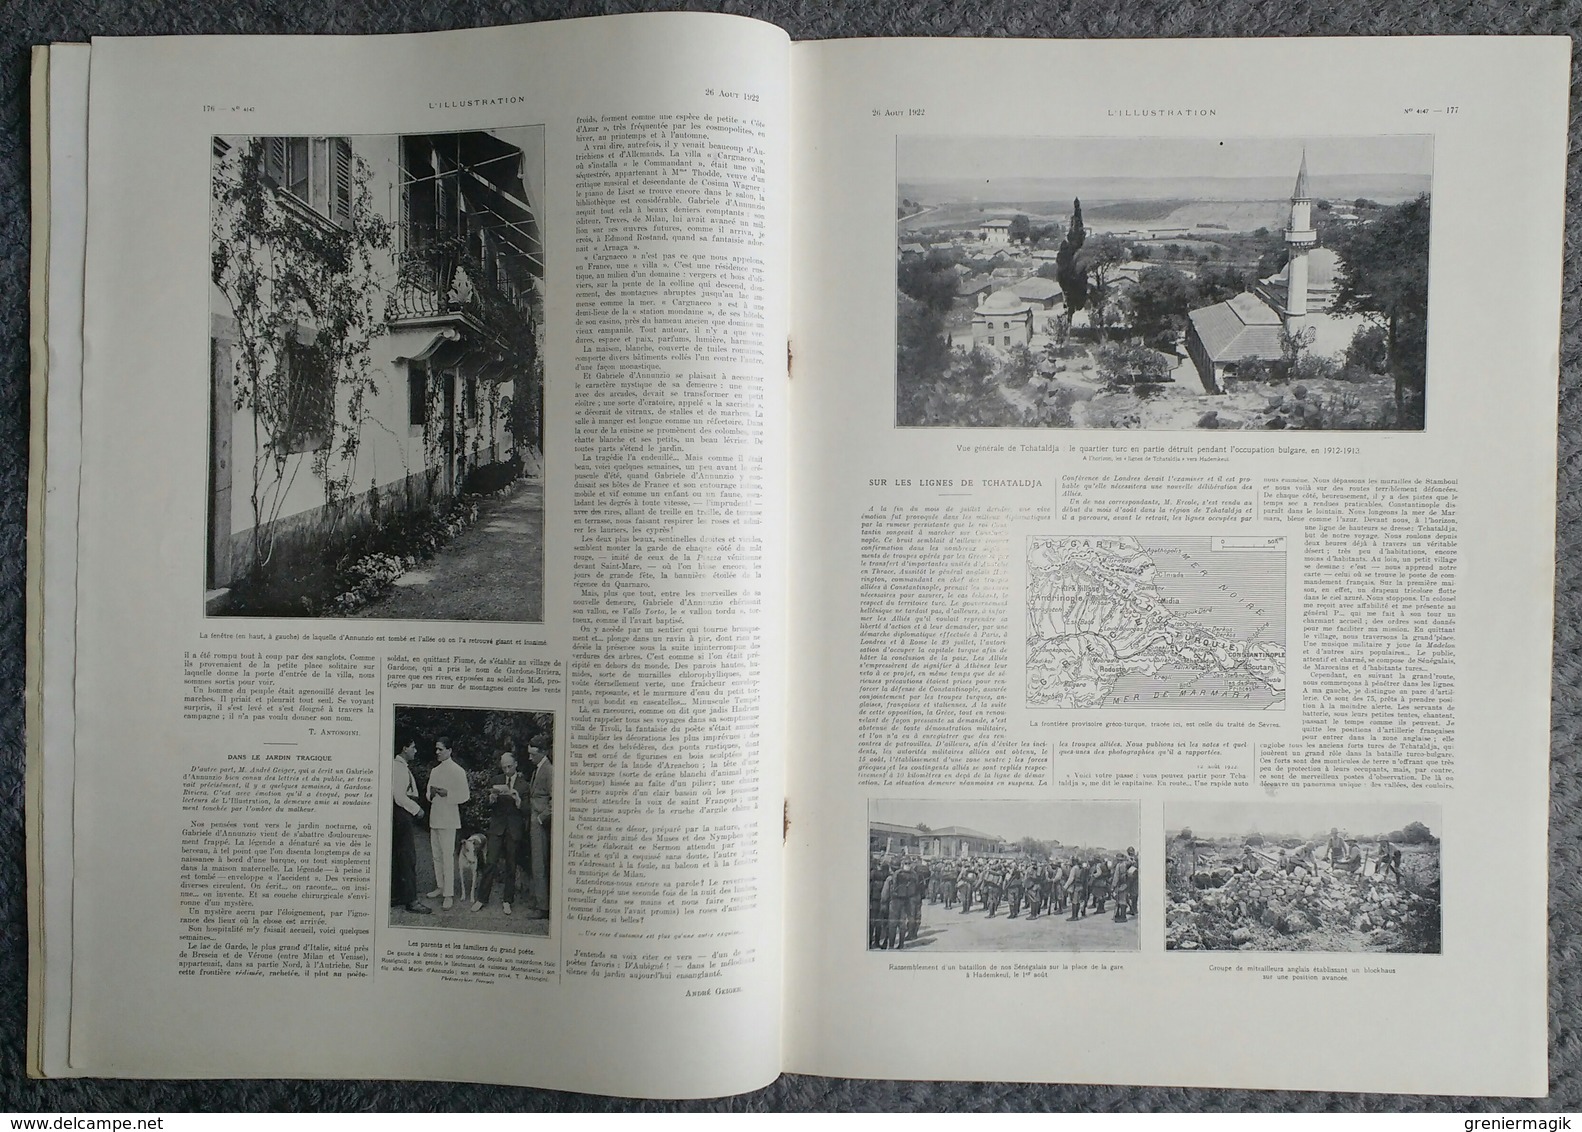 L'Illustration 4147 26 aout 1922 Première borne de la voie sacrée/Ernest Lavisse/Gabriele d'Annunzio/Haute-Silésie bison